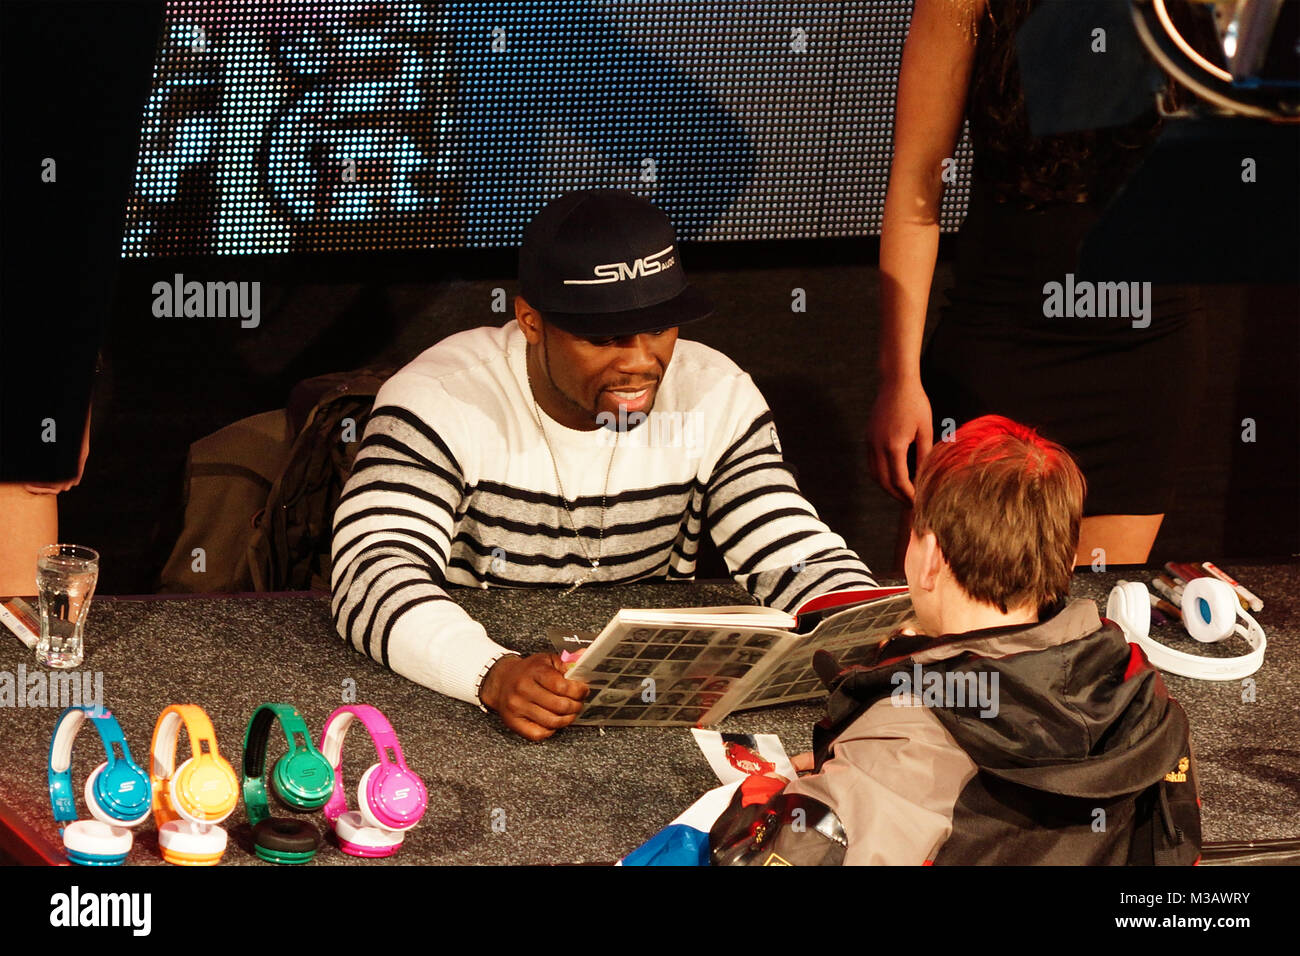 50 Cent ( Curtis James Jackson ), US-Amerikanischer Rapmusiker, stellt neue Kopfhörer der Firma SMS Audio mit anschließender Autogrammstunde im ALEXA (Einkaufscenter) in Berlin vor. Stock Photo